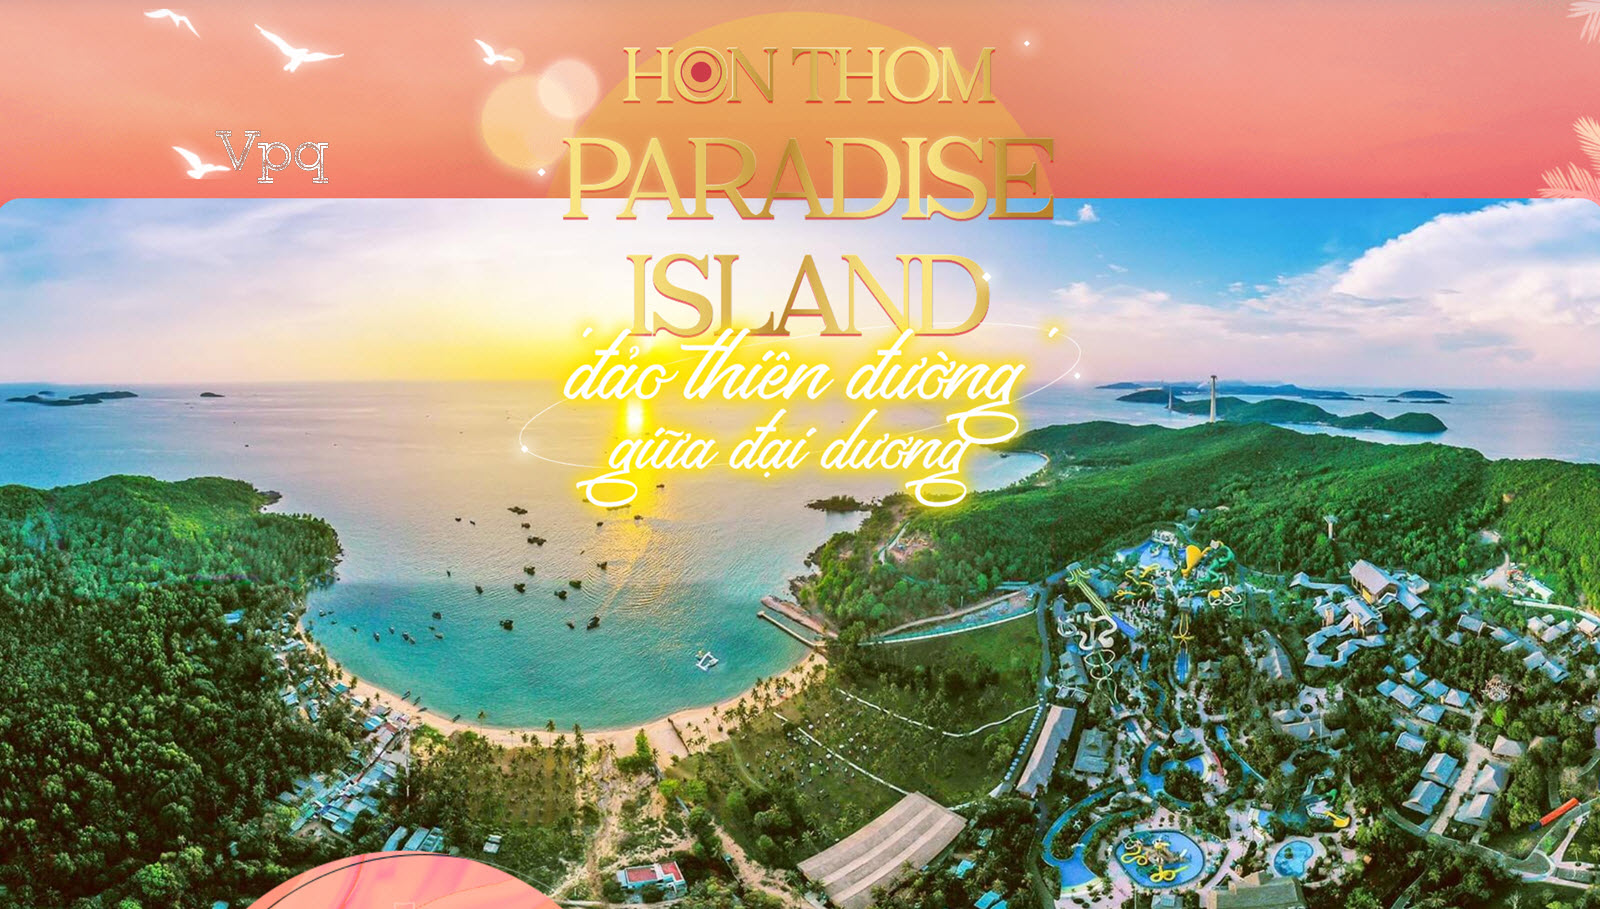 Đến với Hon Thom Paradise Island - Thiên đường là có thật